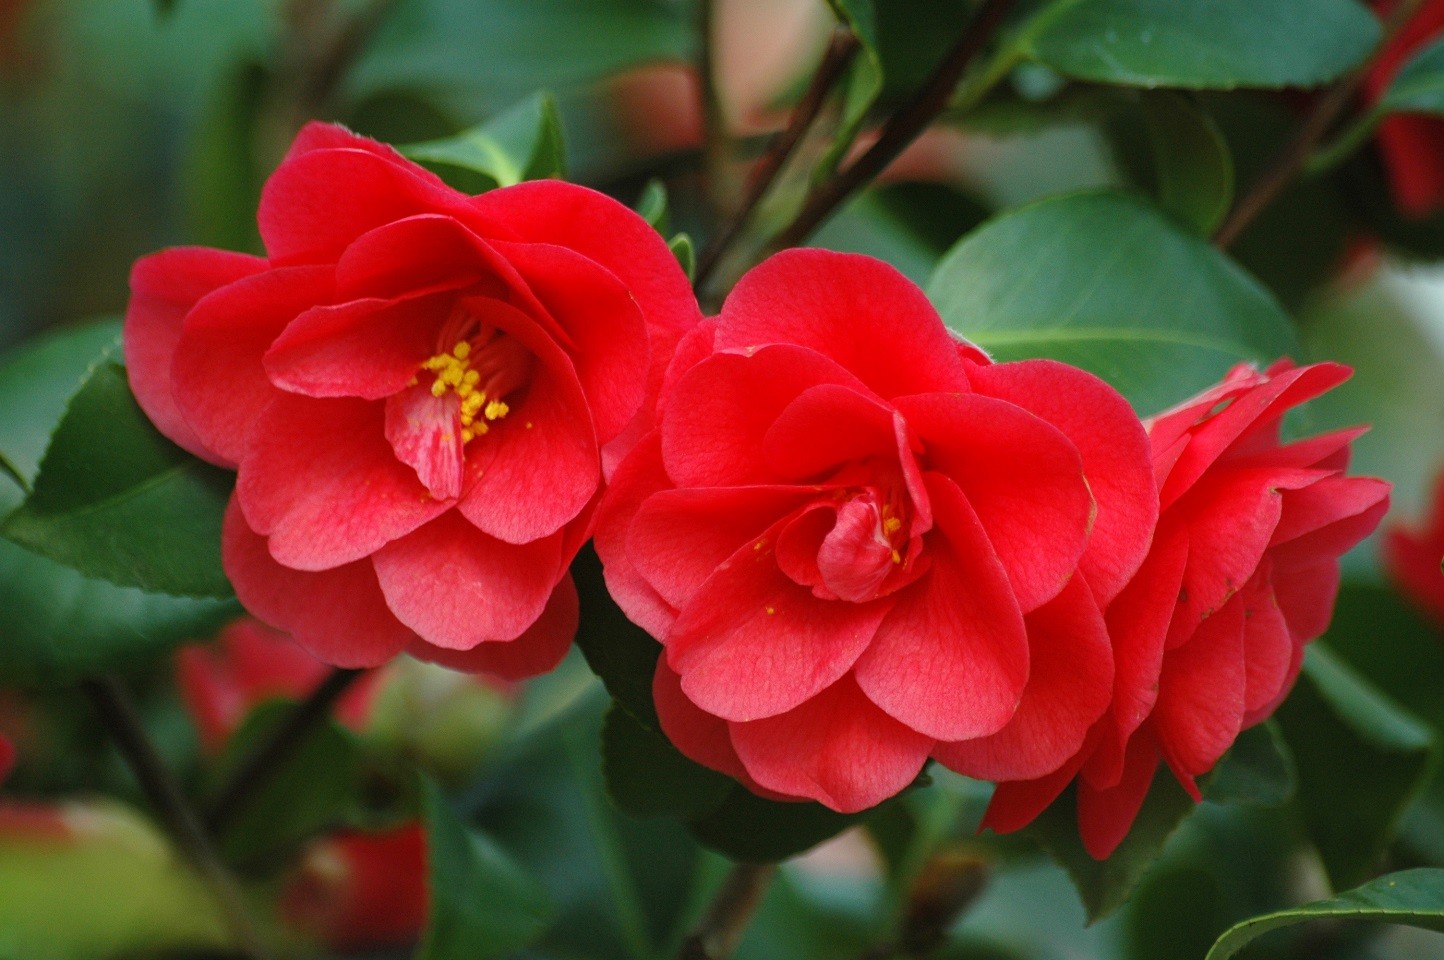 Camellia Mary Williams - Camellia reticulata Mary Williams